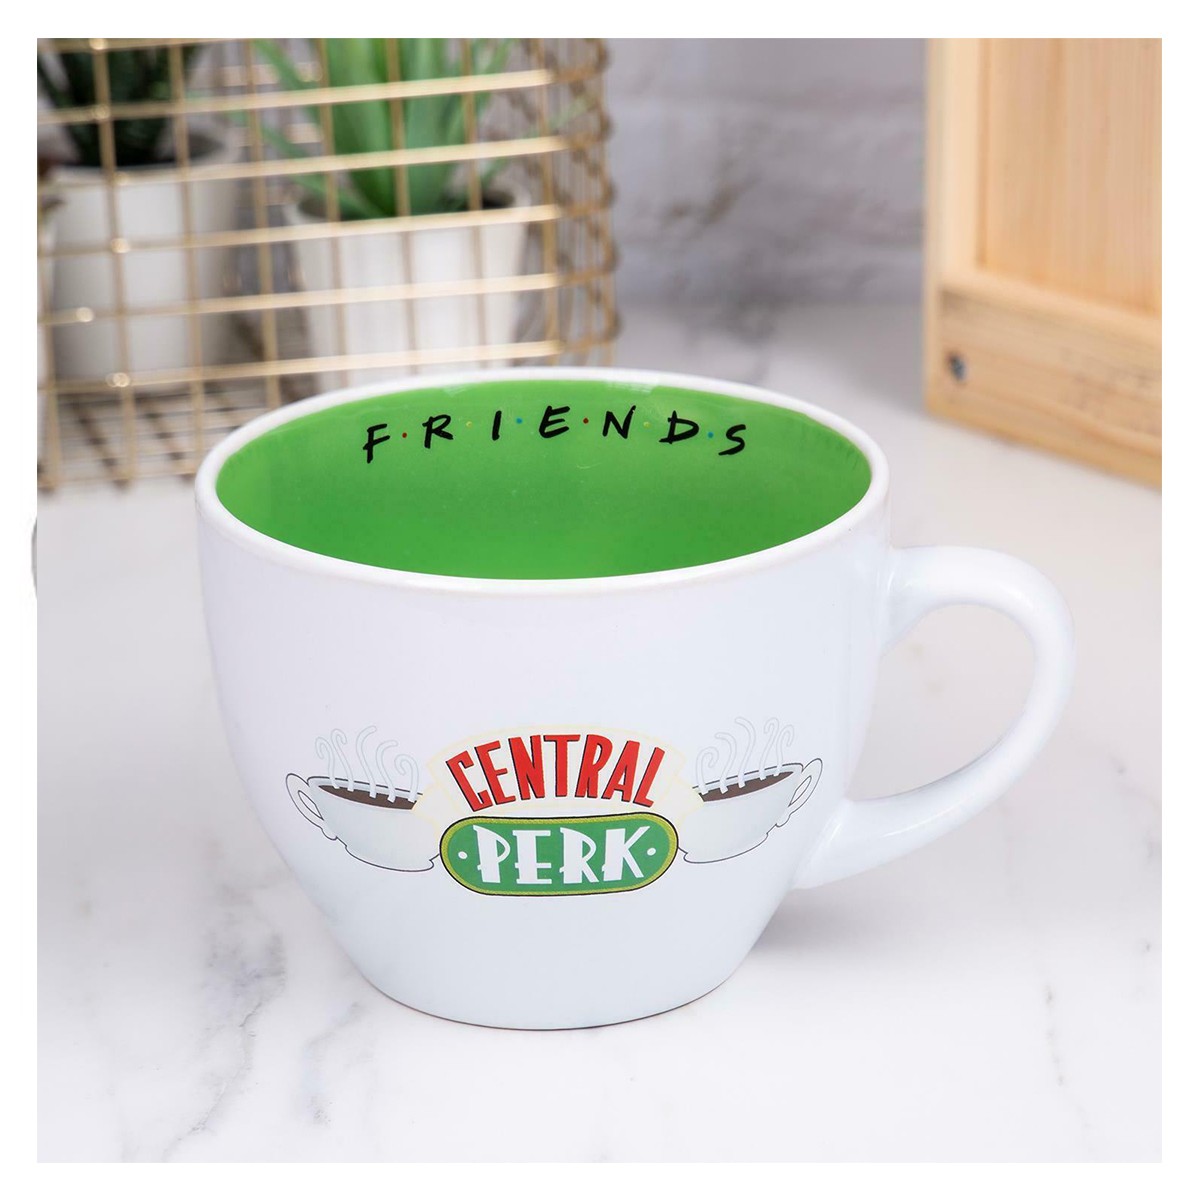 Etats-Unis série TV Friends Central Perk Blanc Céramique mugs Lait Thé Tasse À Café Cadeau 